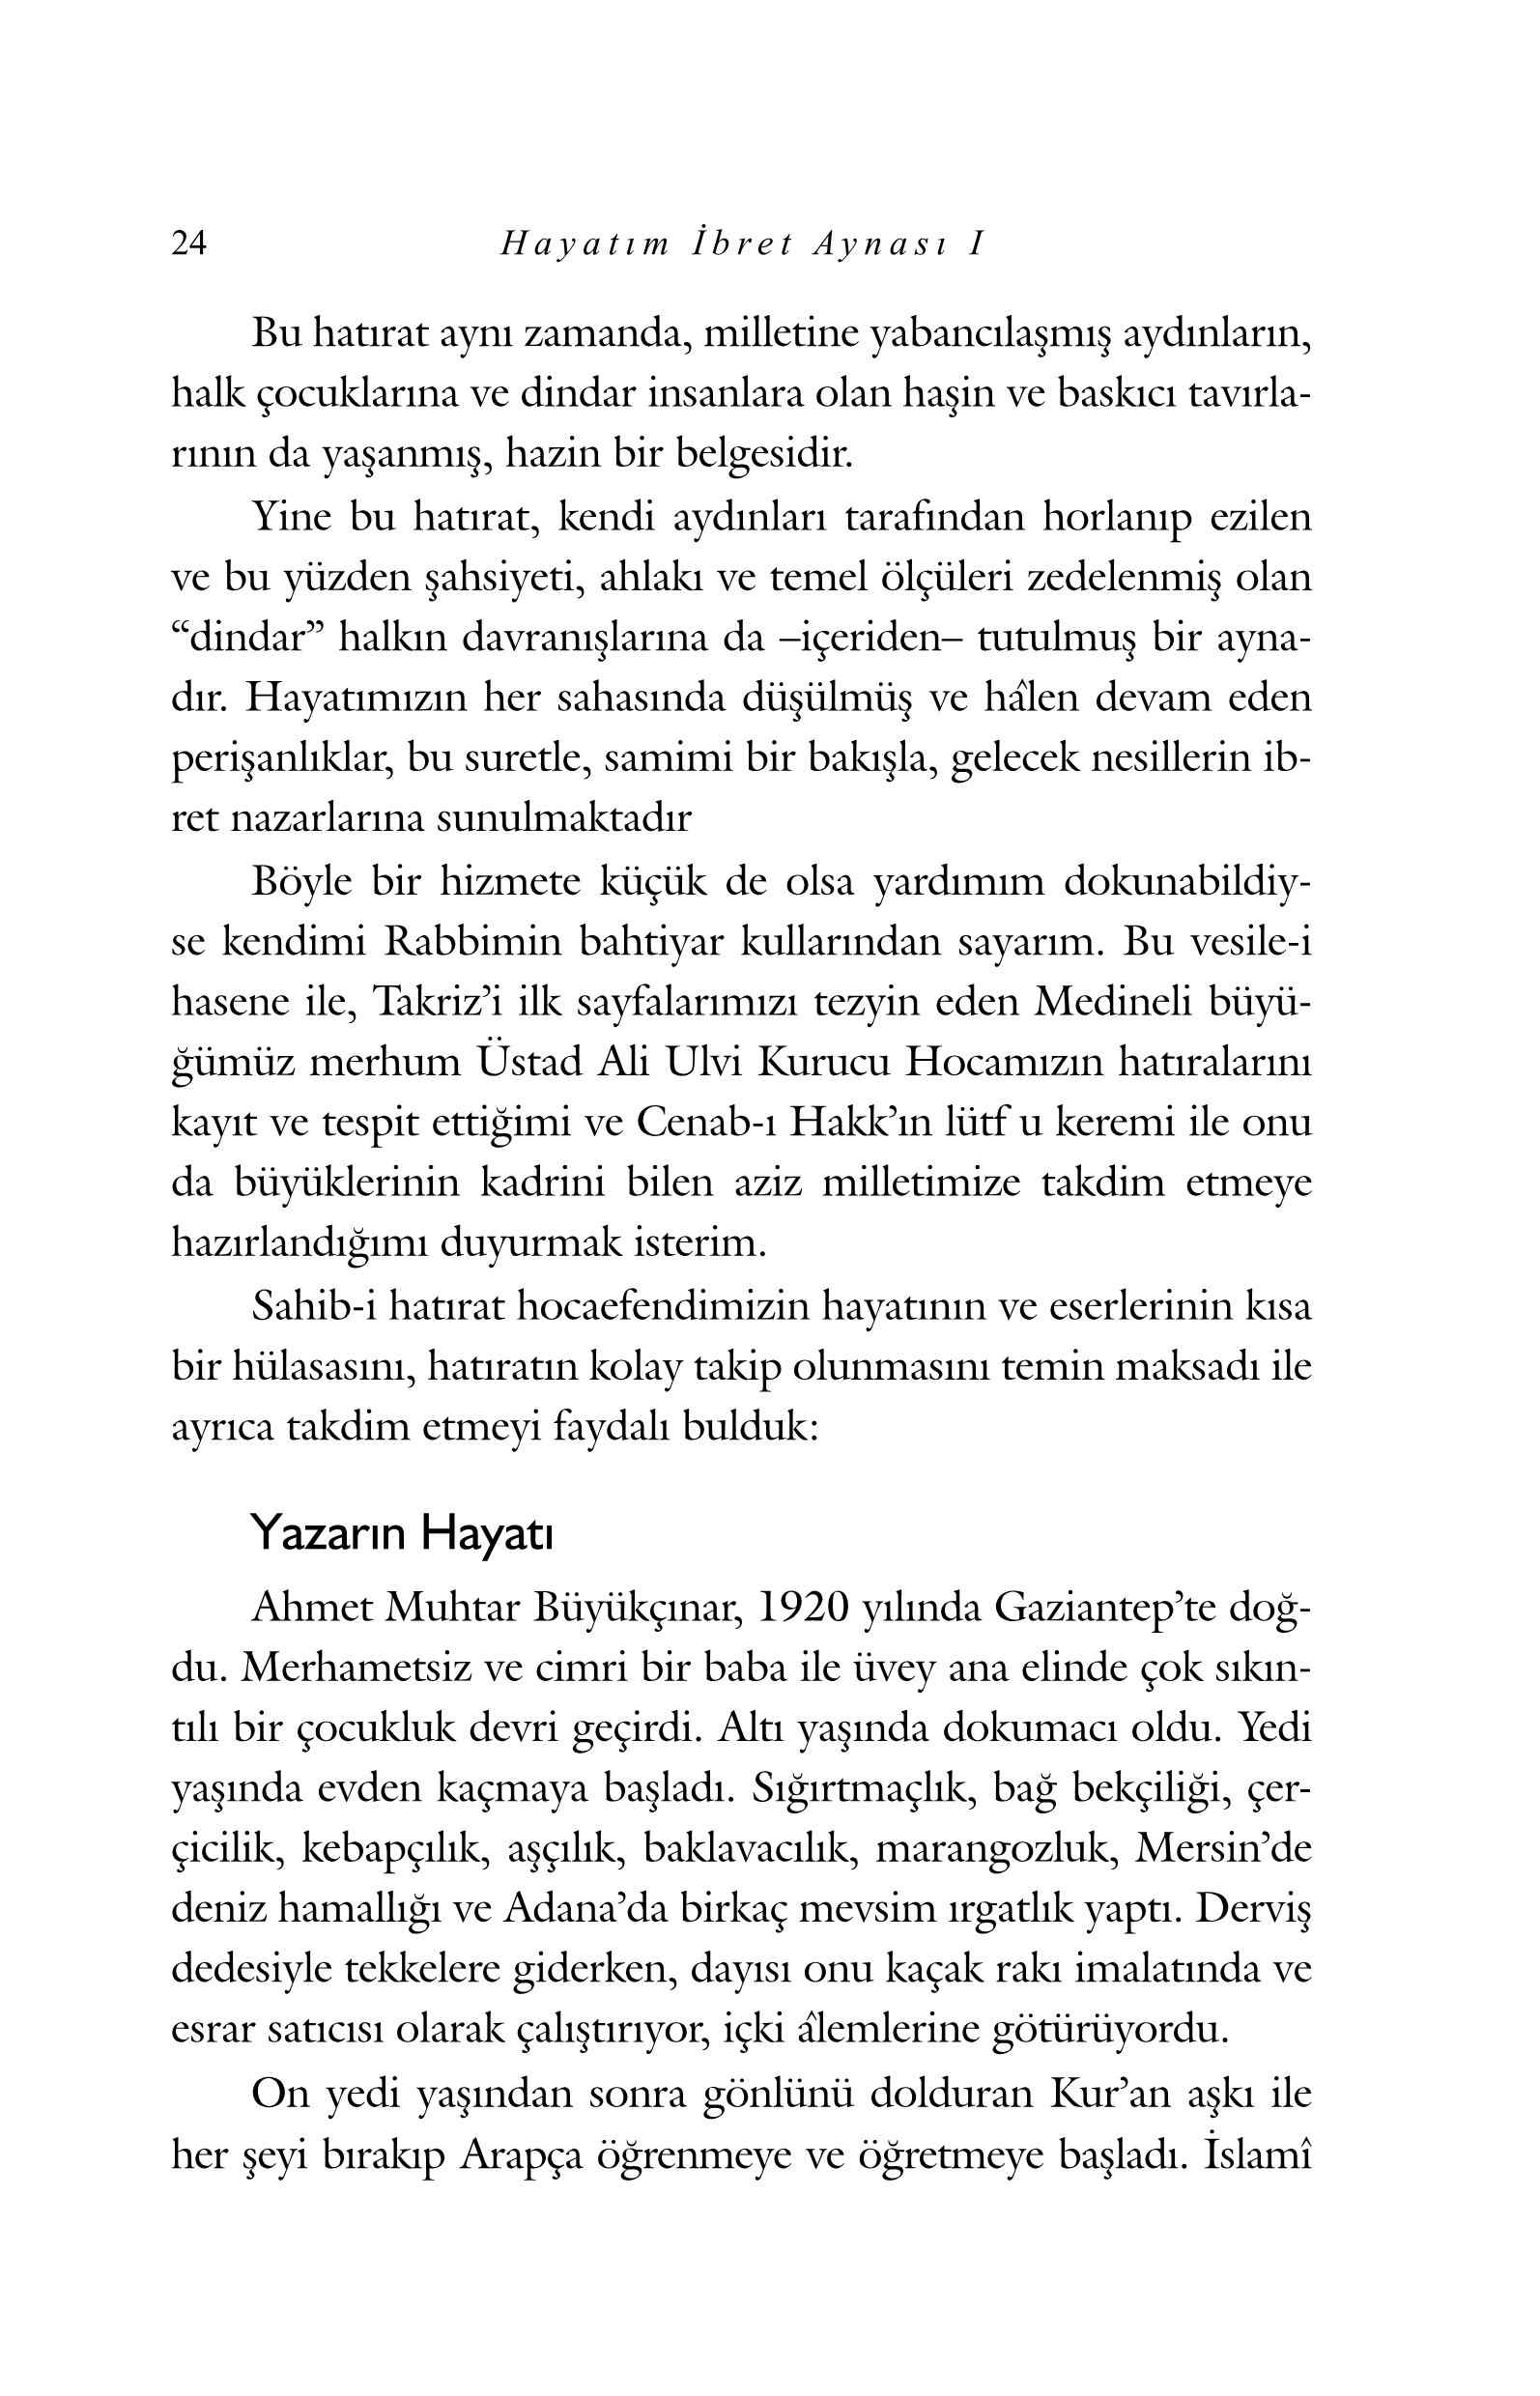 Ahmet Muhtar Buyukcinar - Hayatim Ibret Aynasi-1 - KaynakYayinlari.pdf, 449-Sayfa 